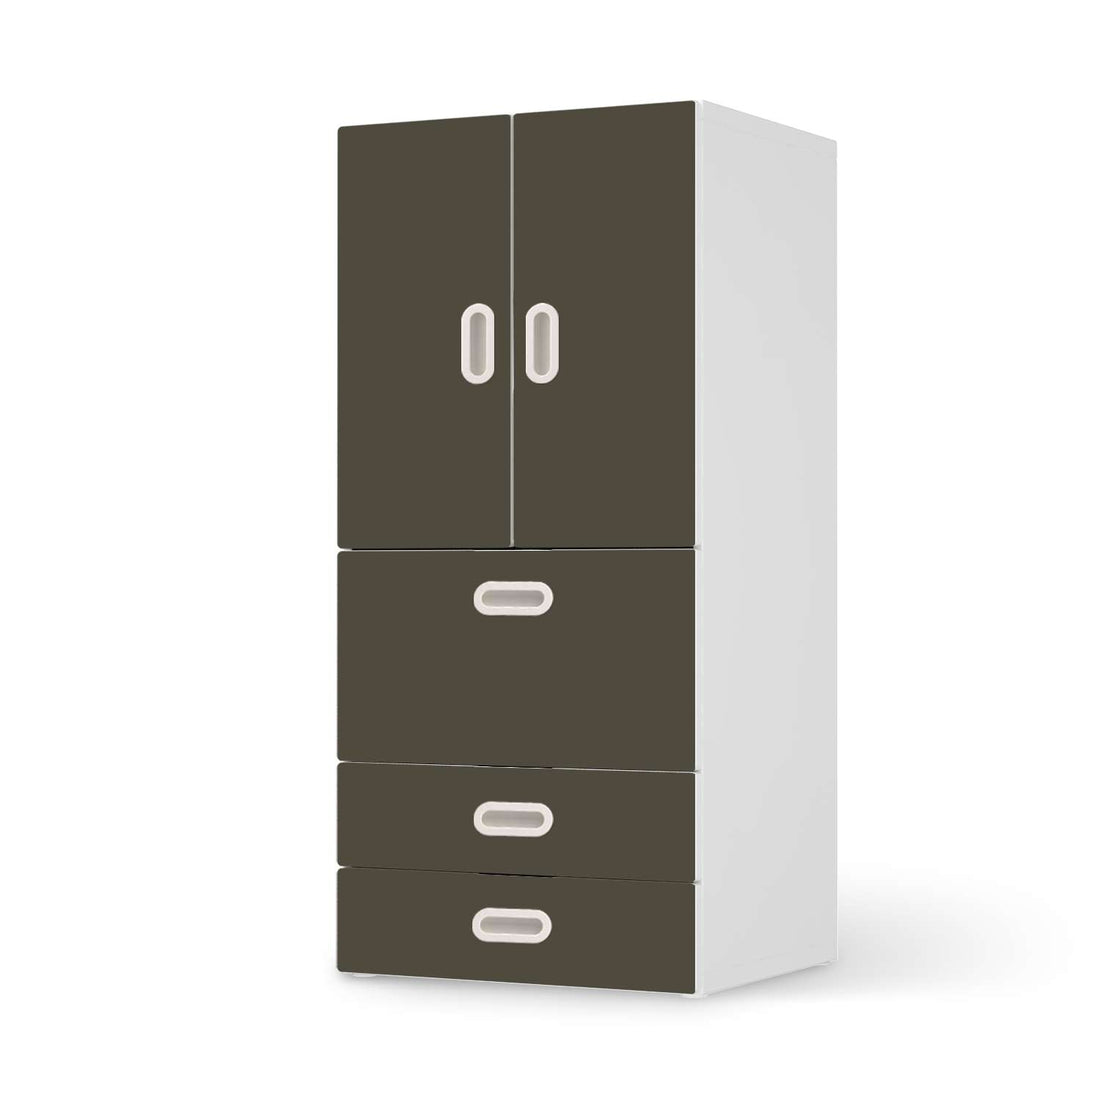 Möbelfolie Braungrau Dark - IKEA Stuva / Fritids kombiniert - 3 Schubladen und 2 kleine Türen  - weiss